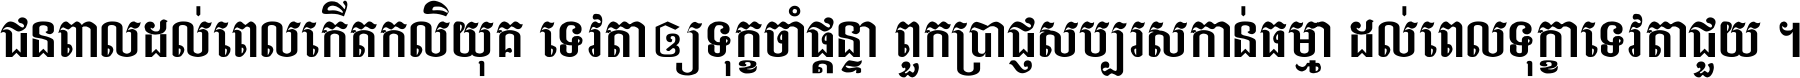 Khmer S4